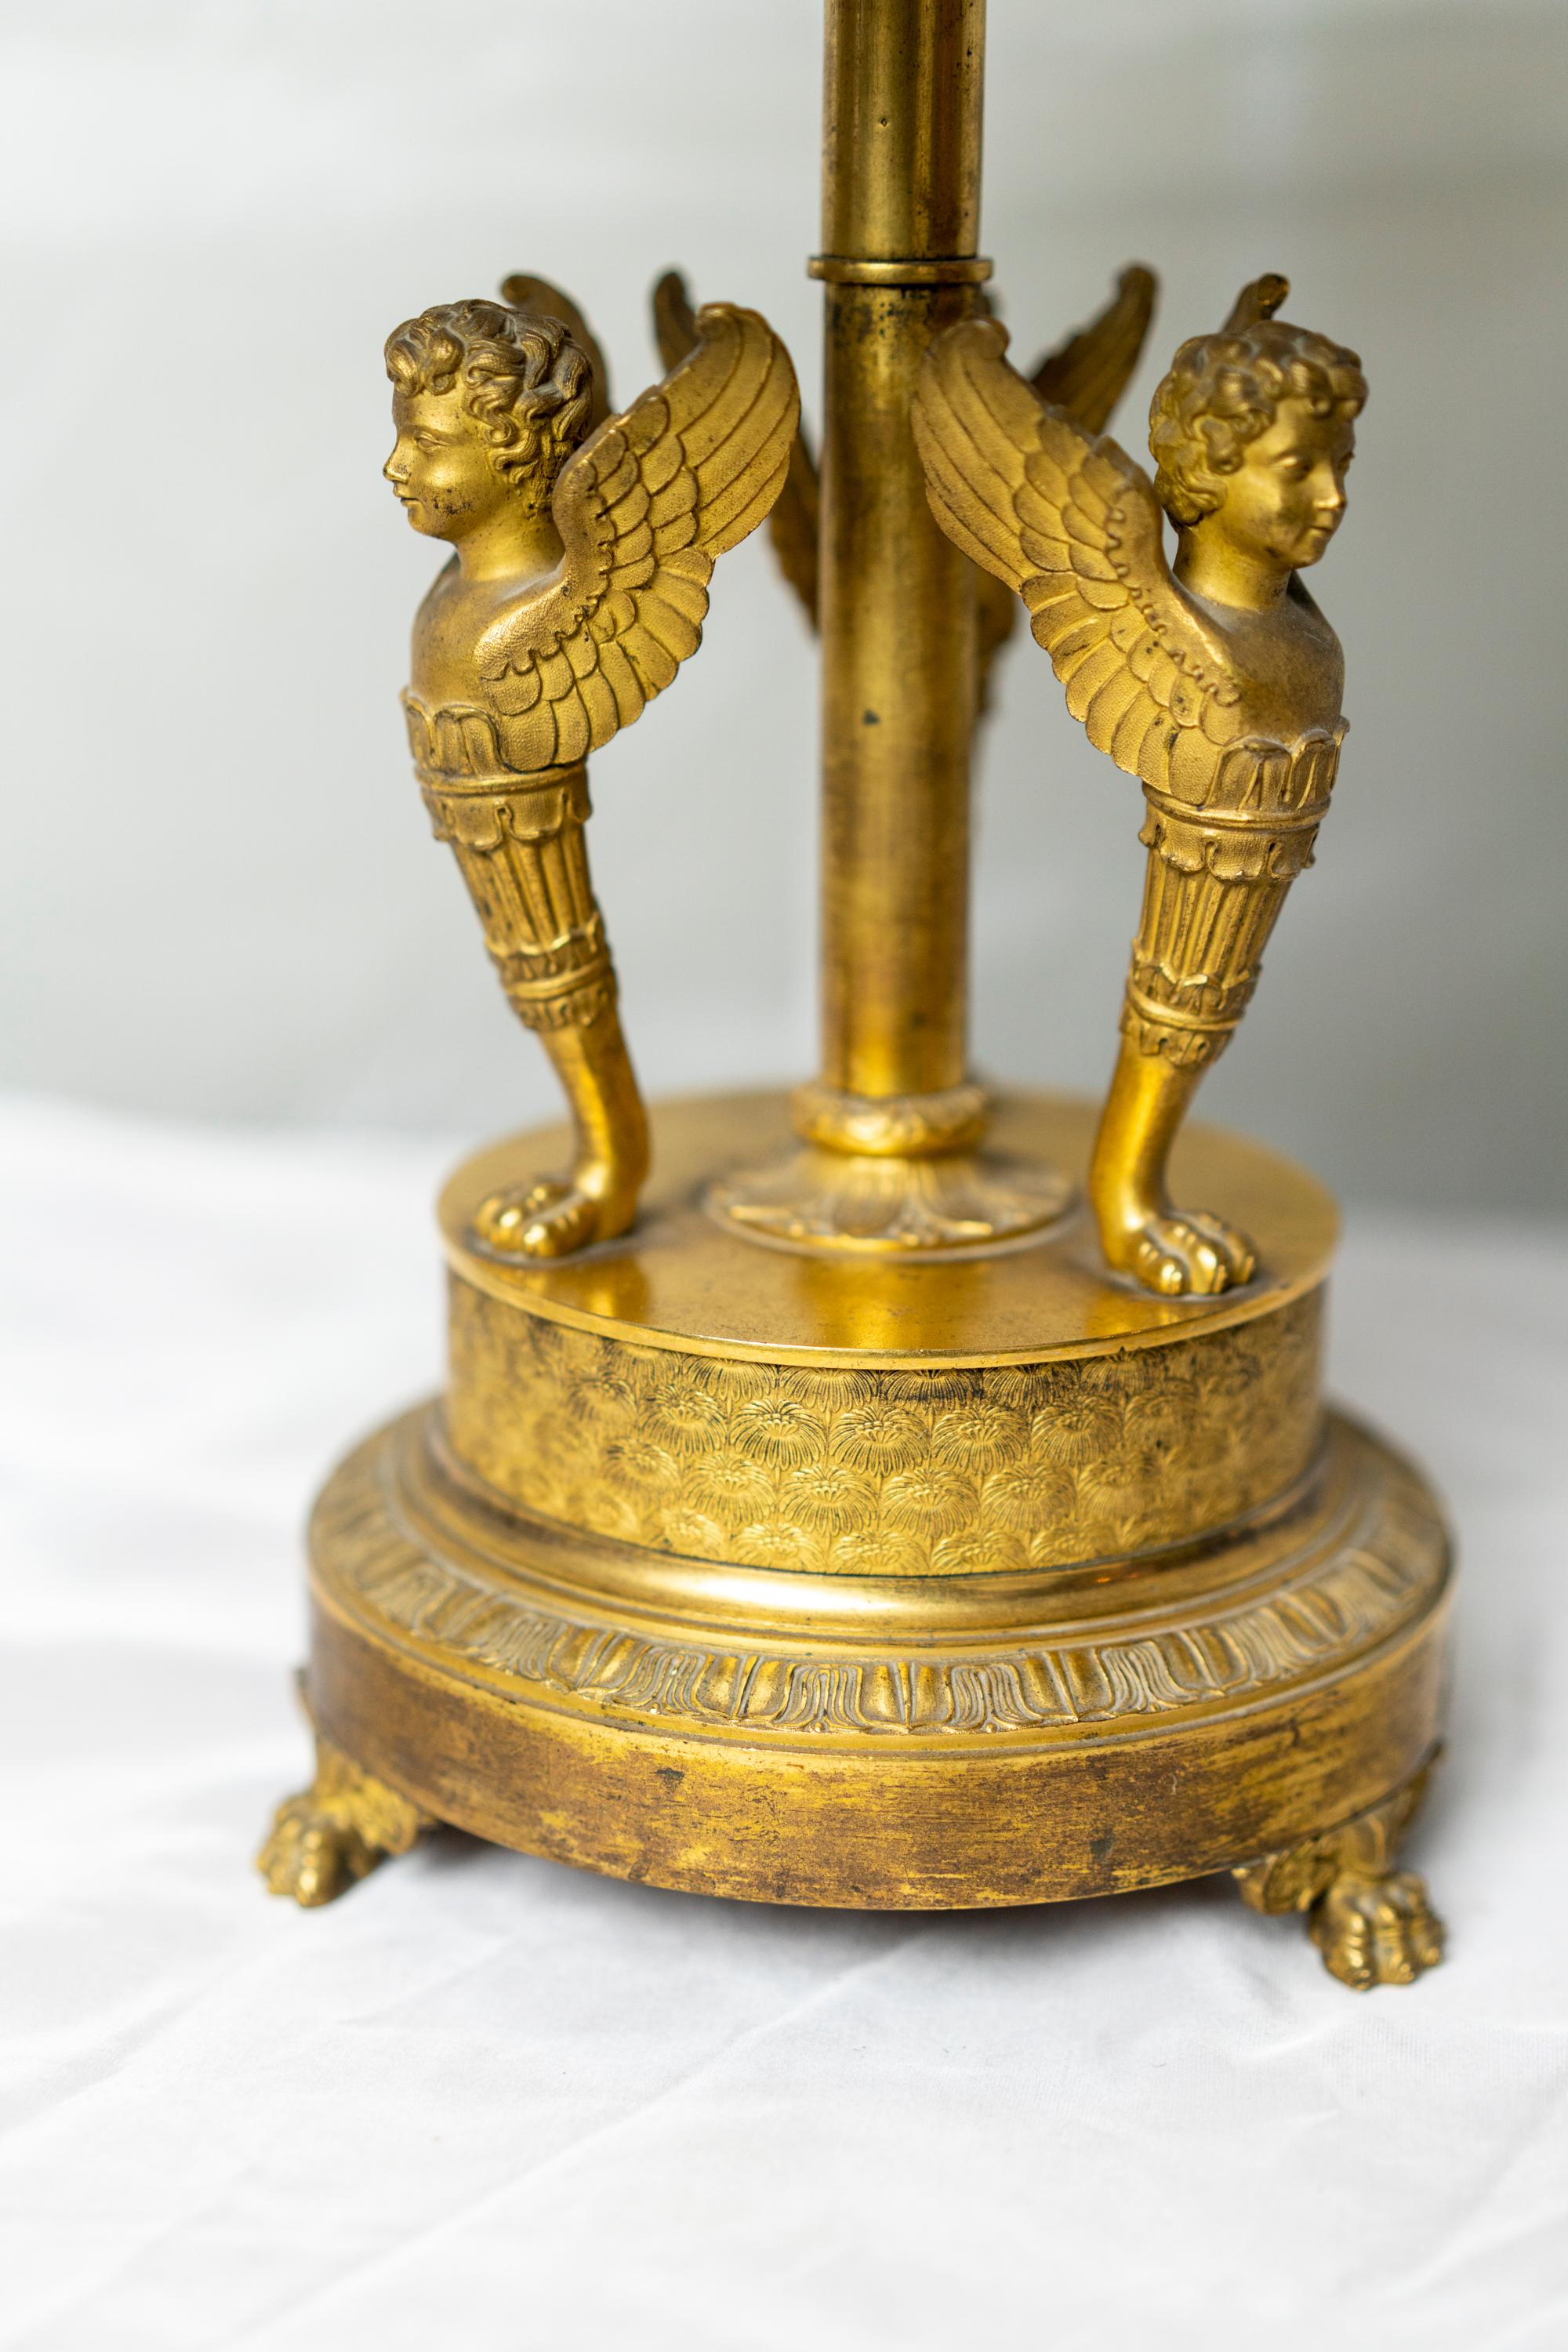 Belle et rare lampe de table bouillotte en bronze doré d'époque Empire avec des chérubins et décorée de palmiers en relief et reposant sur une base en pieds de pattes.